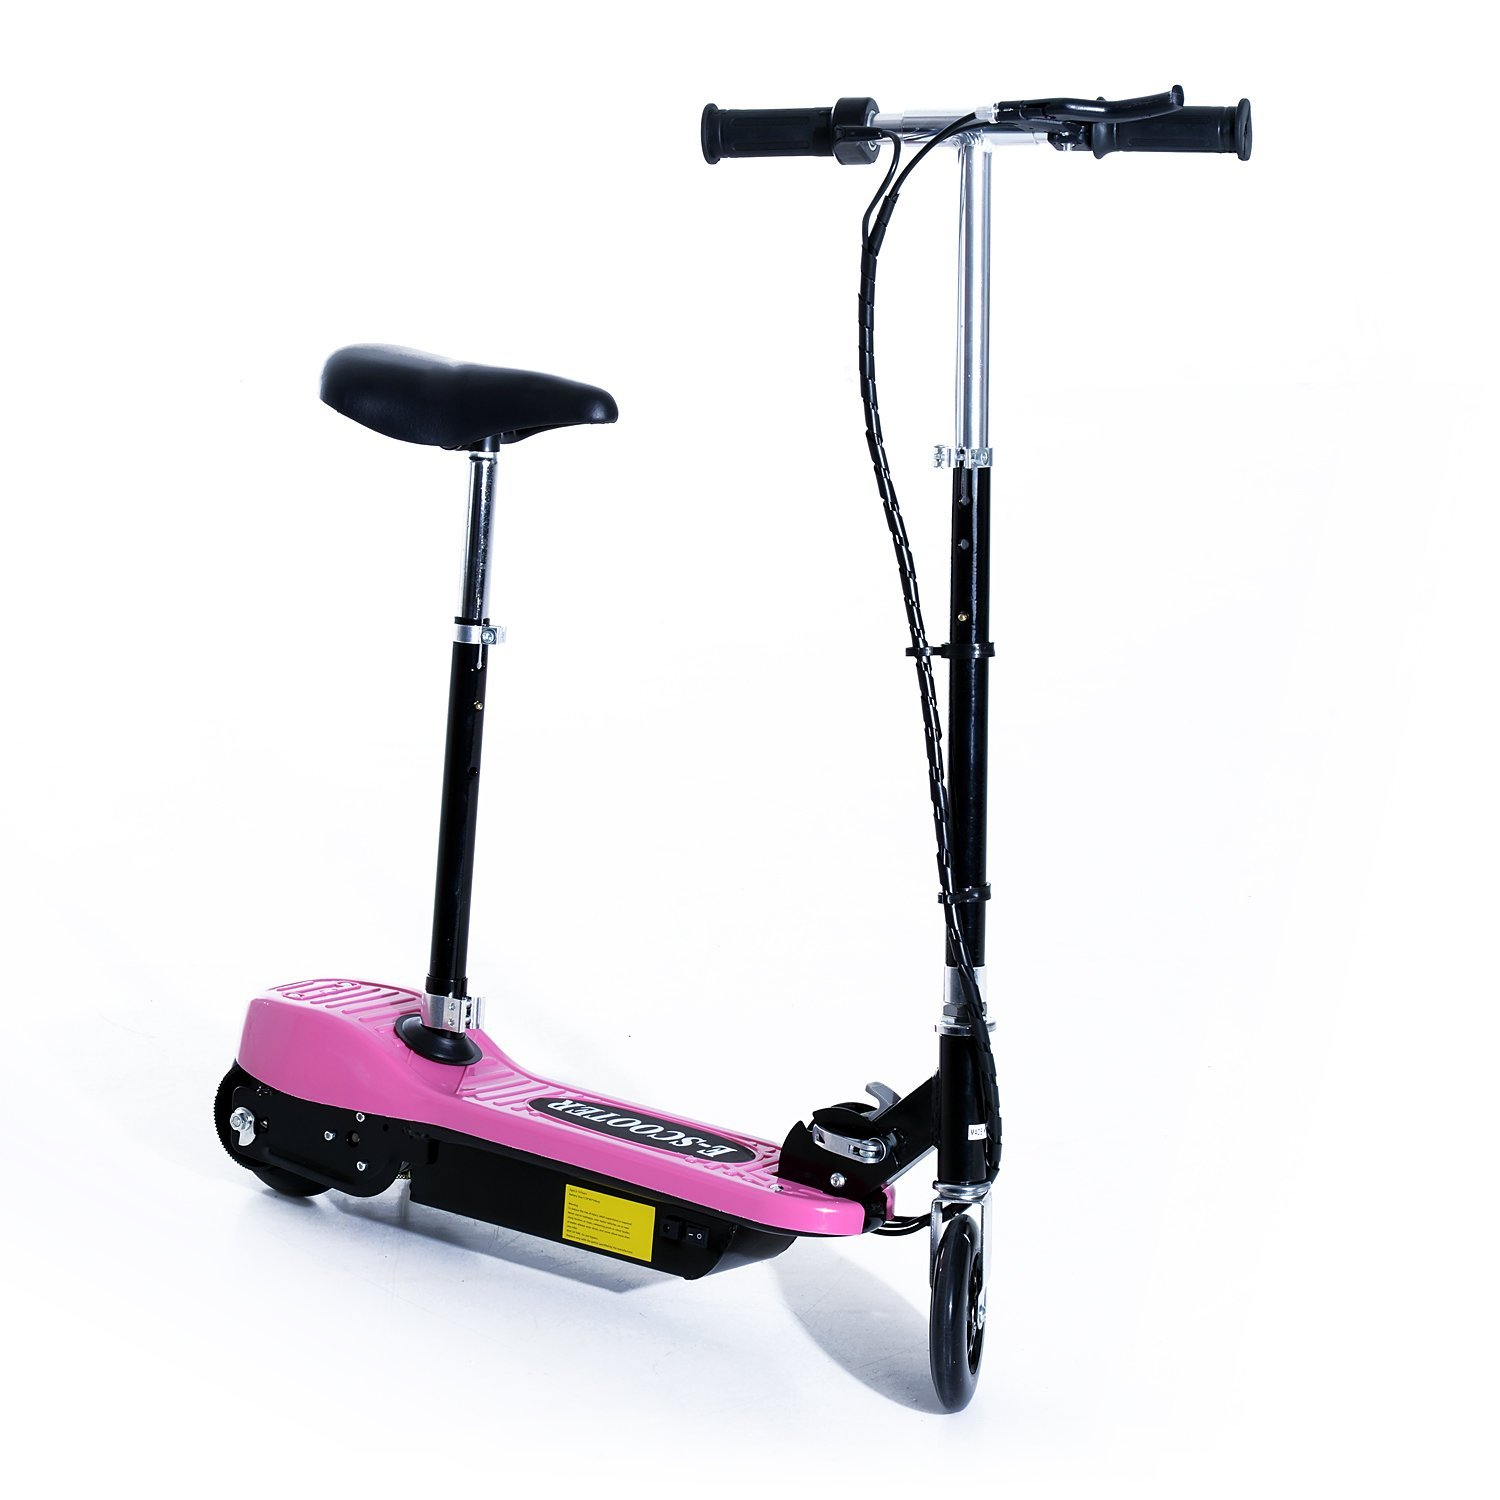 Homcom Scooter Patinete plegable con manillar y asiento ajustable rosa color 78x40x96cm para niño escooter batería 120w fren pie de apoyo 4